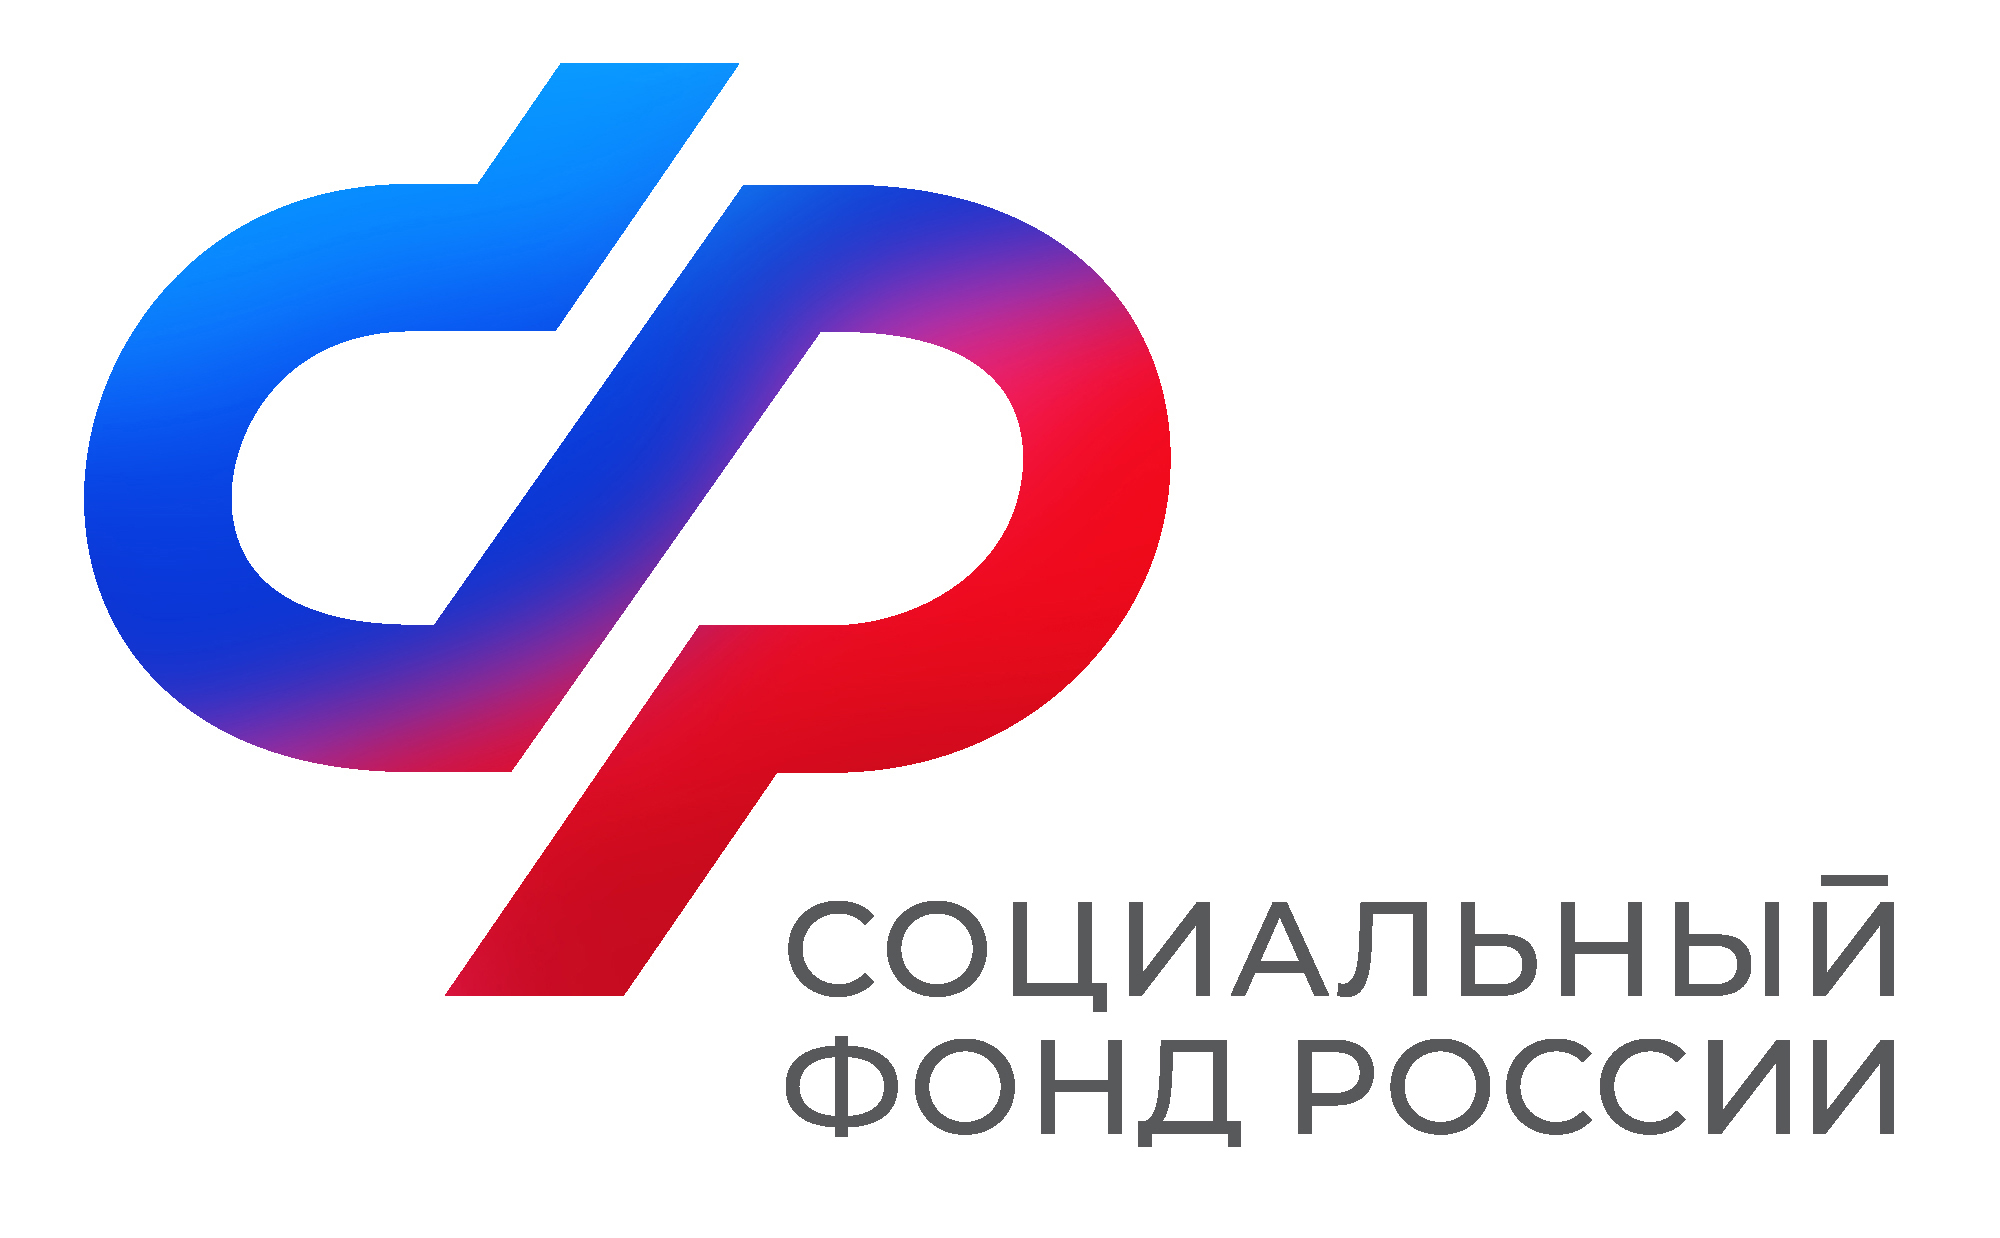 Более 17 тысяч медработников в Воронежской области получают специальную социальную выплату.